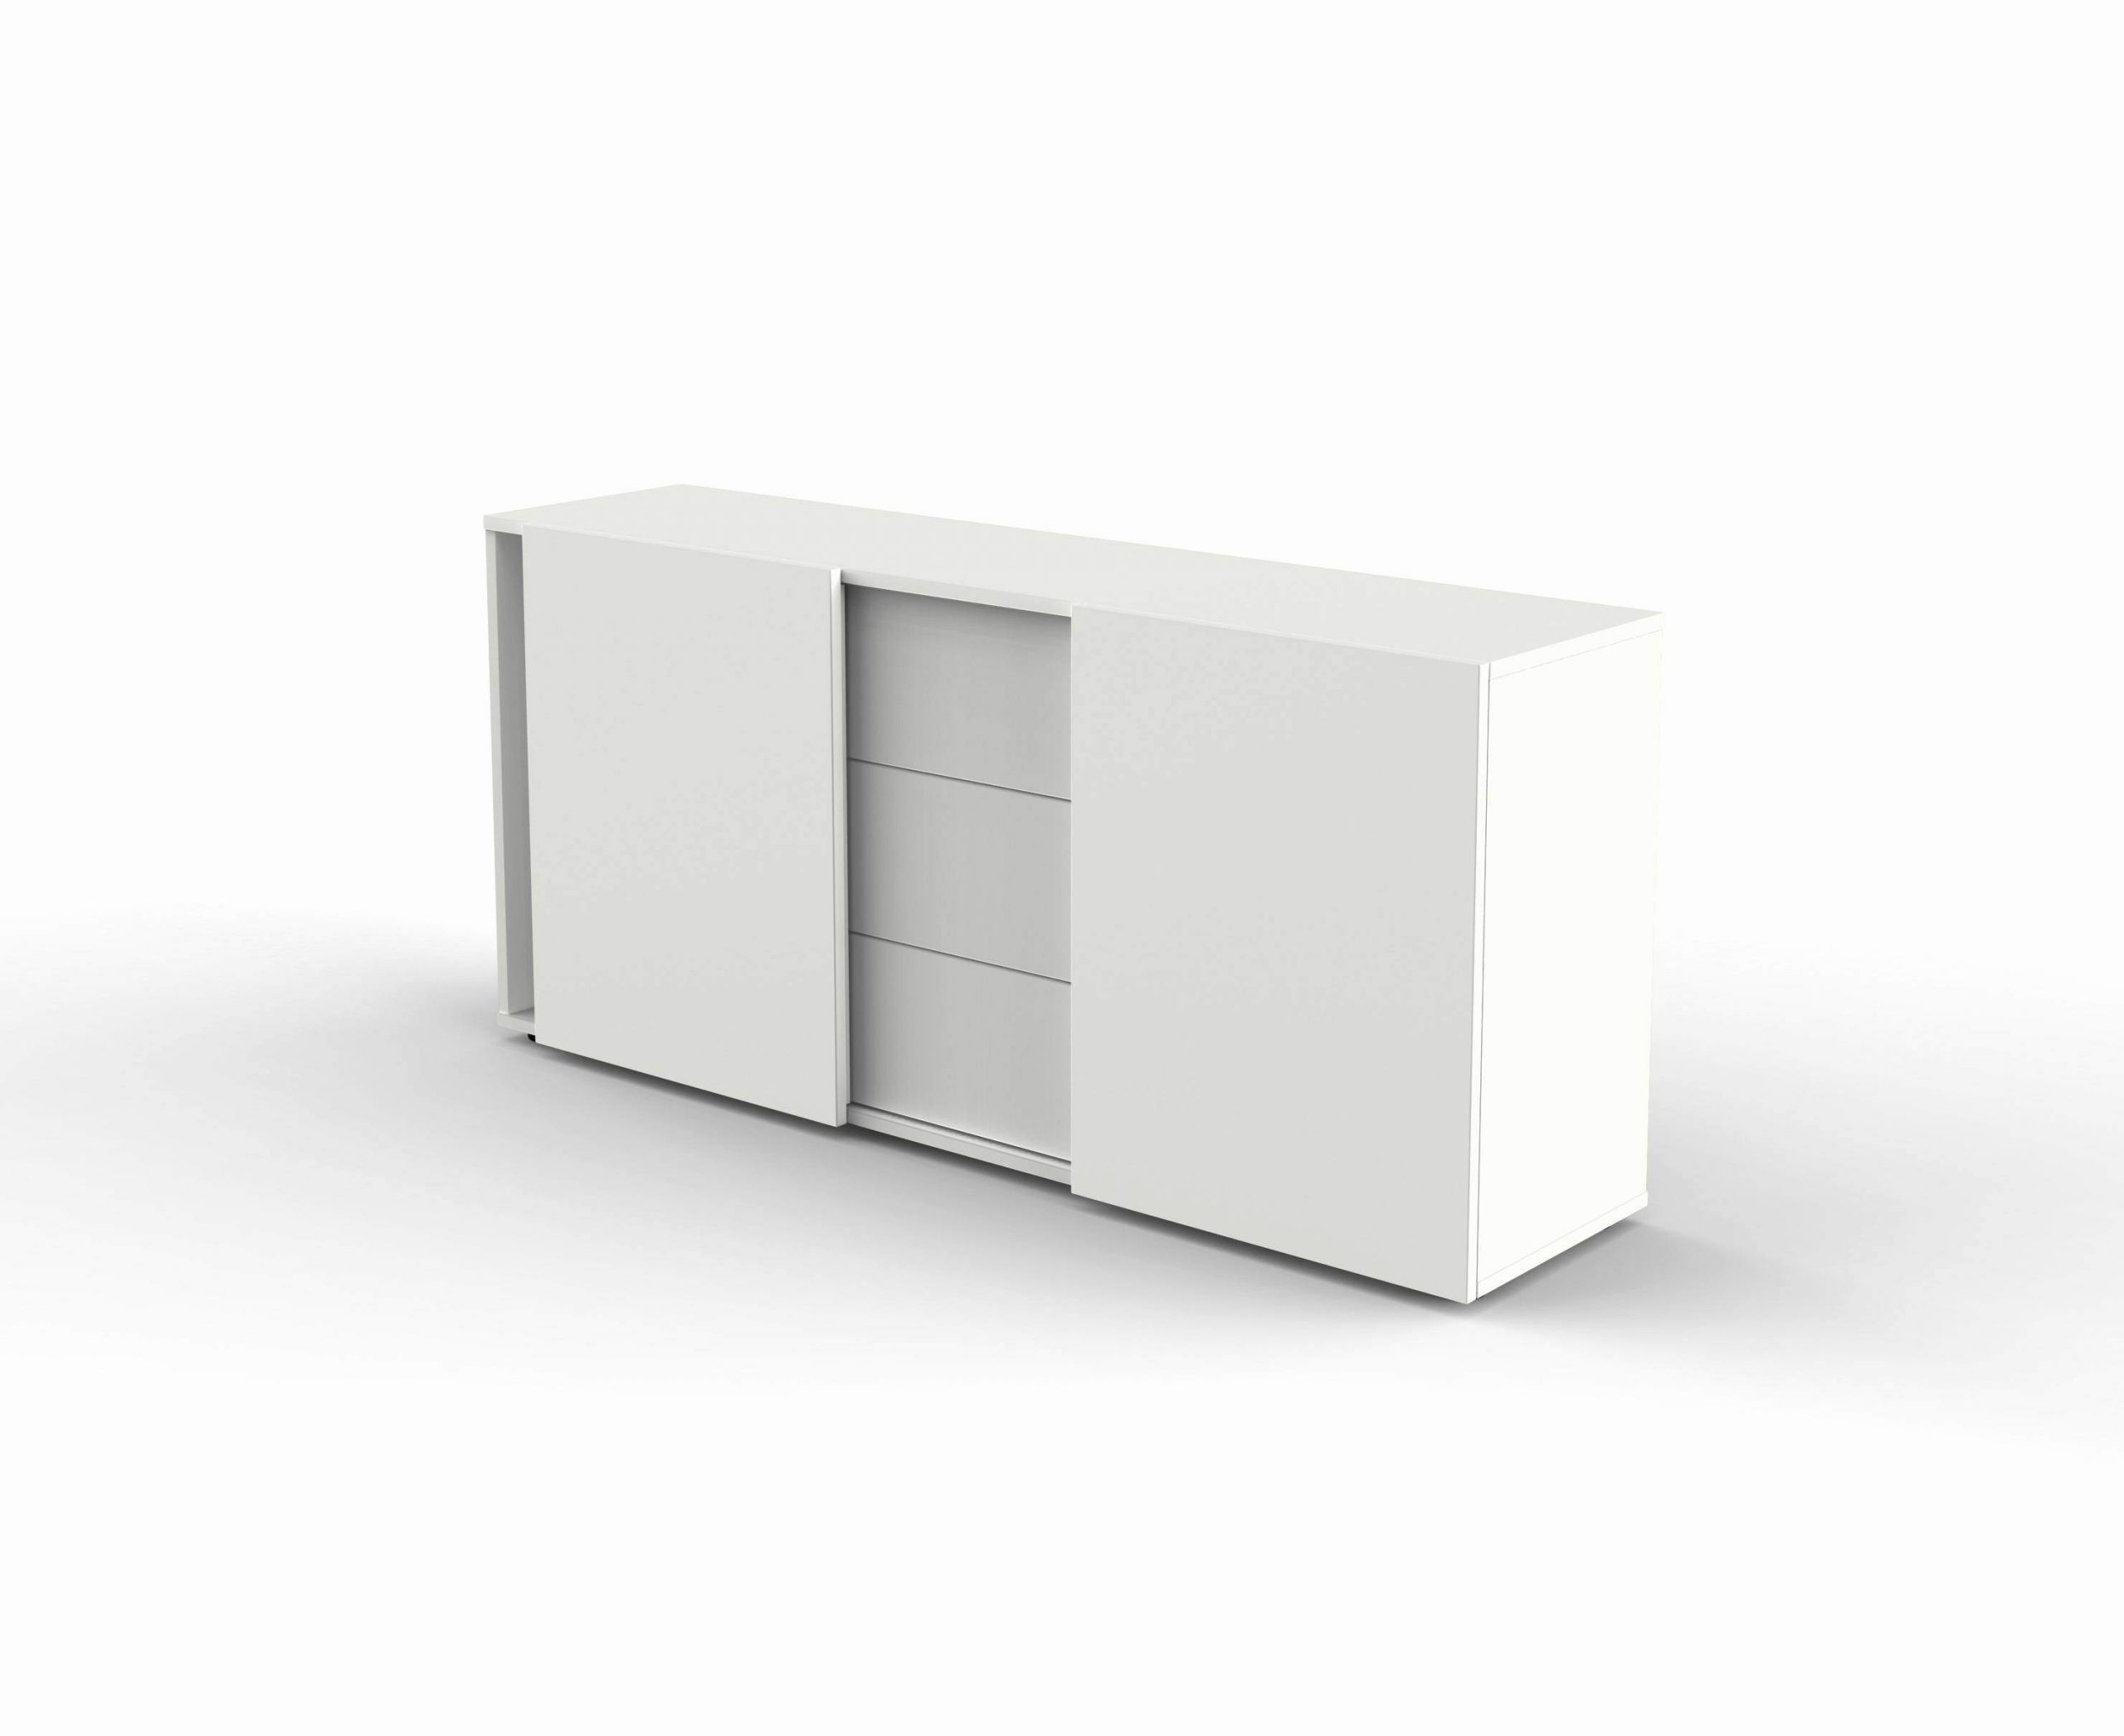 wohnzimmer sideboard genial best wohnzimmer sideboard design inspirations of wohnzimmer sideboard